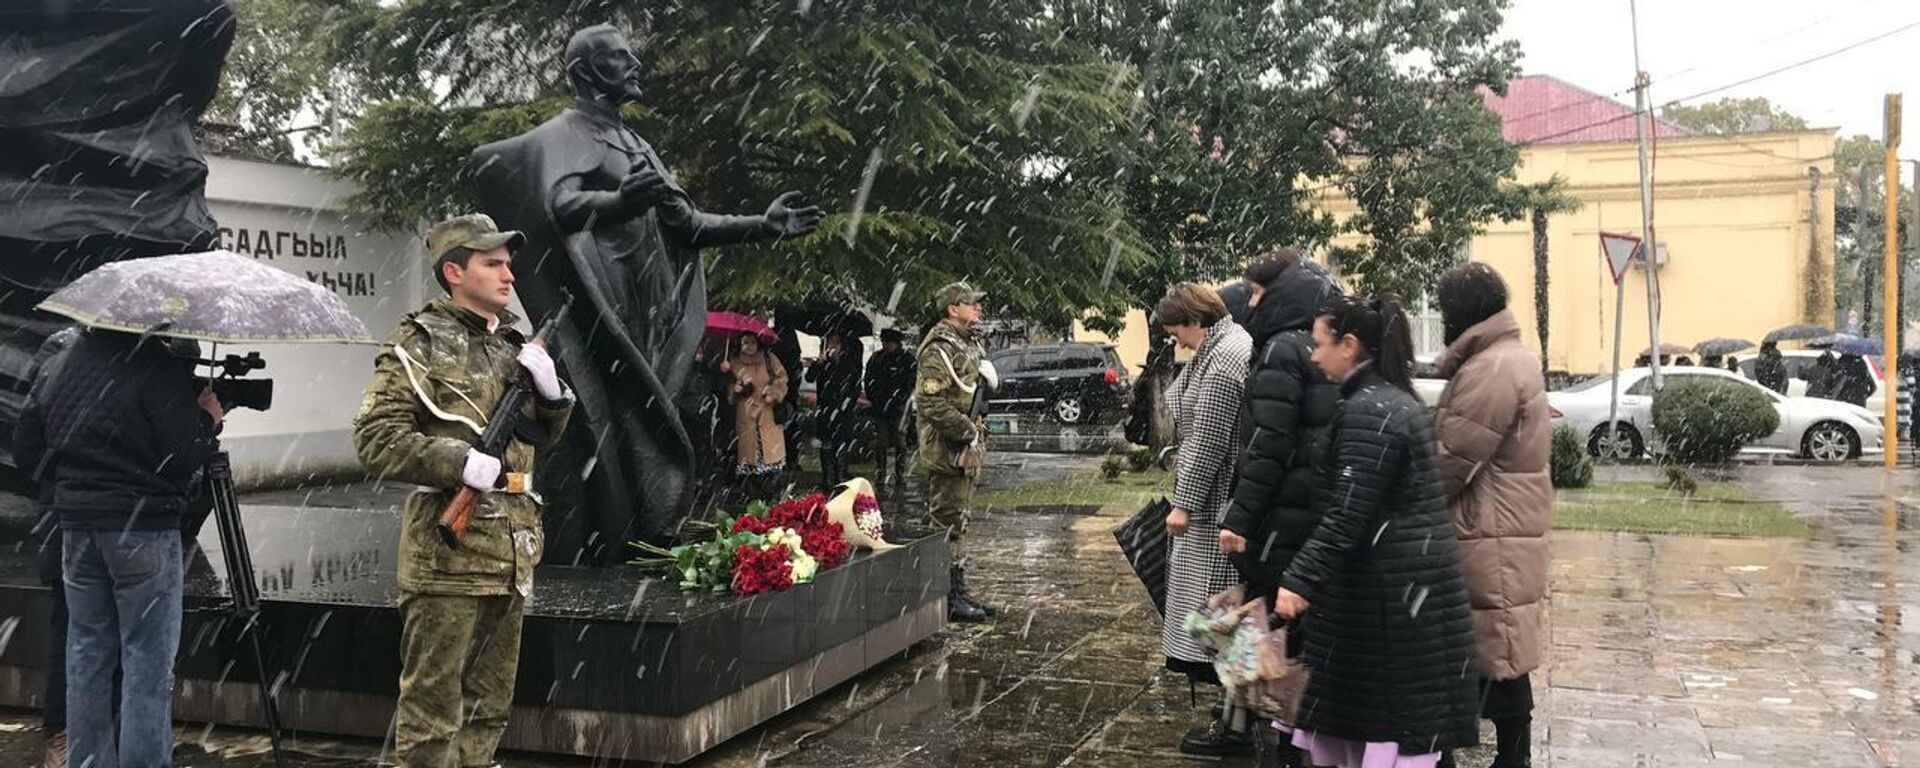 Памятная церемония в честь погибших защитников Абхазии в Гудауте - Sputnik Абхазия, 1920, 16.03.2022